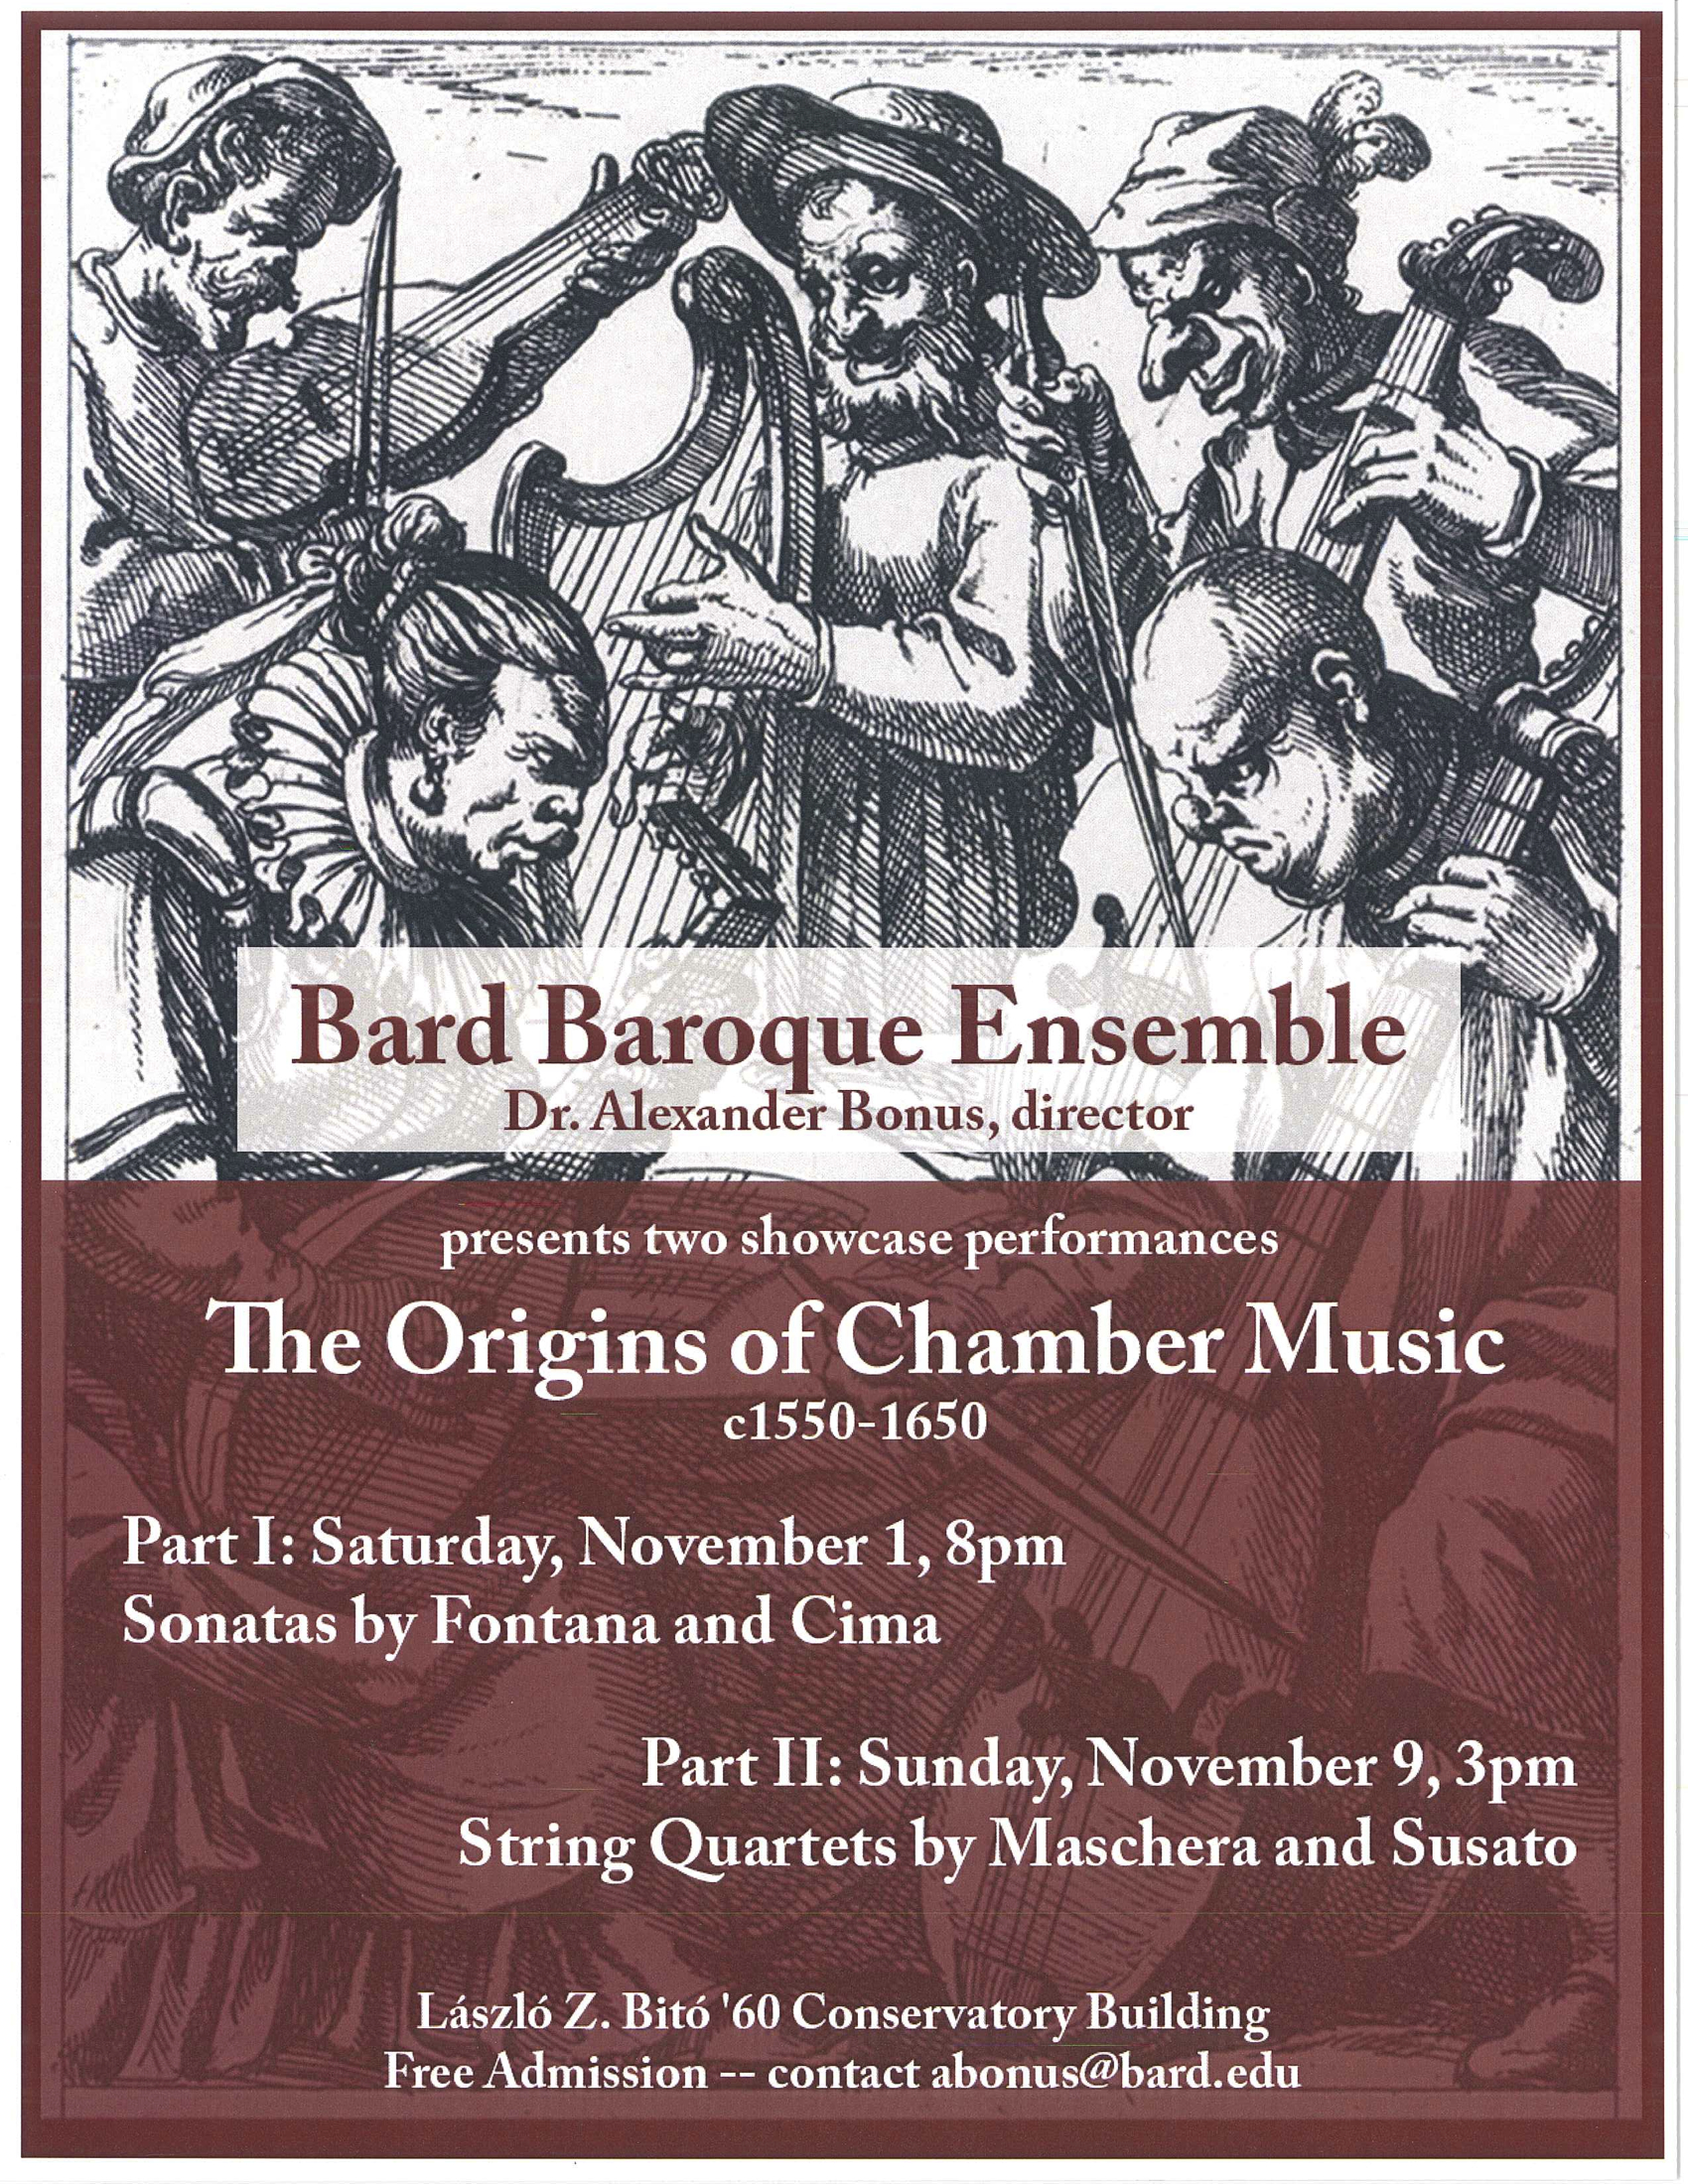 The Origins of Chamber Music